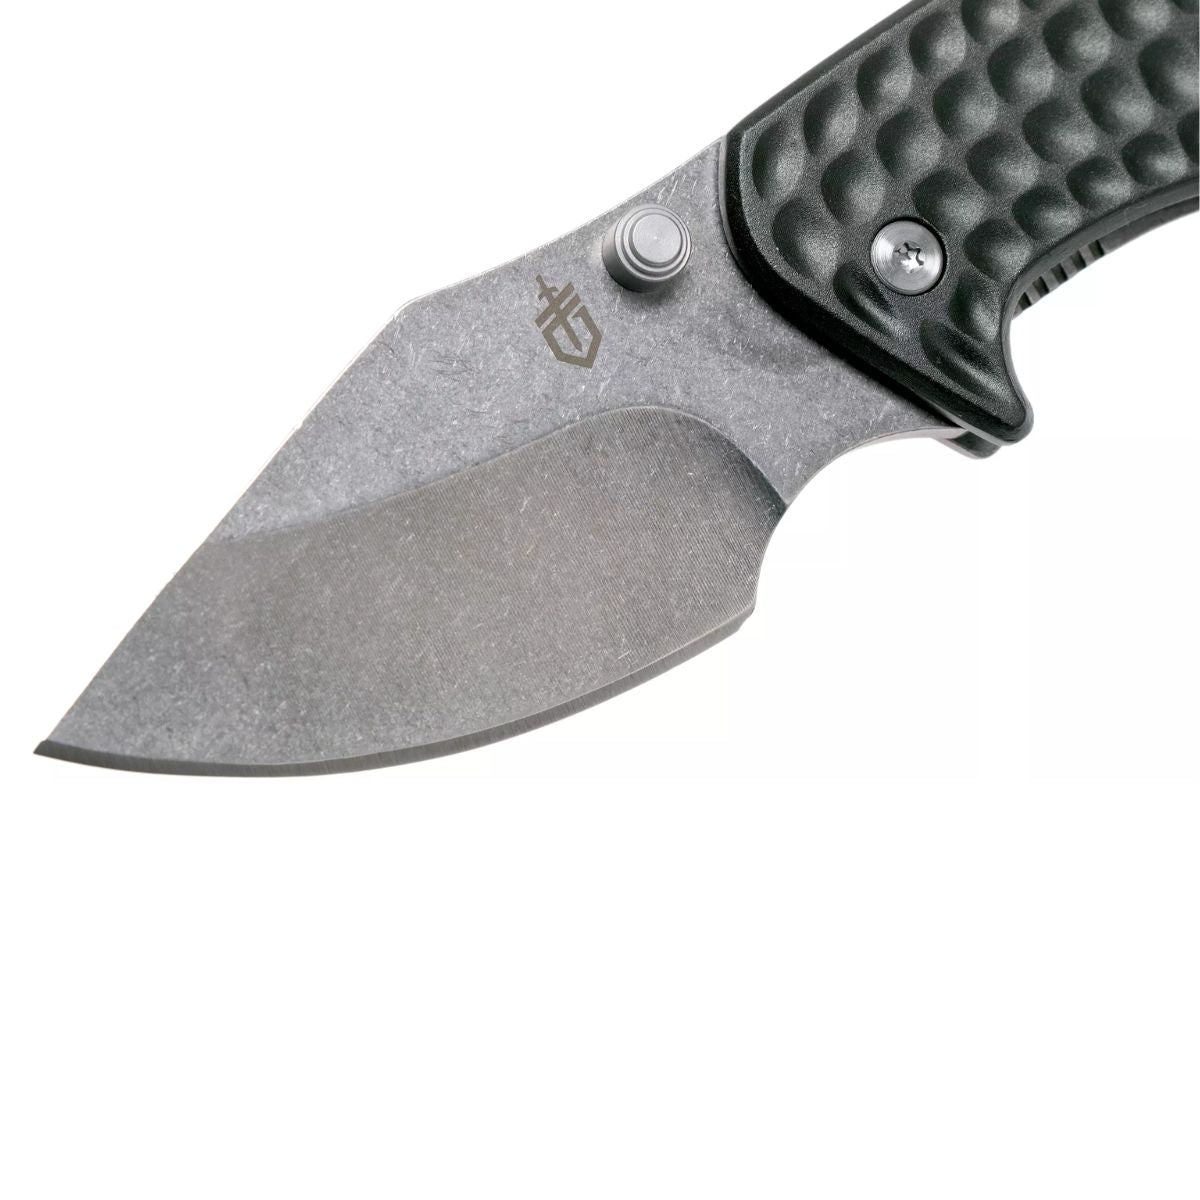 Gerber Kettlebell Clip Folding Knife - Grey Blister - 5